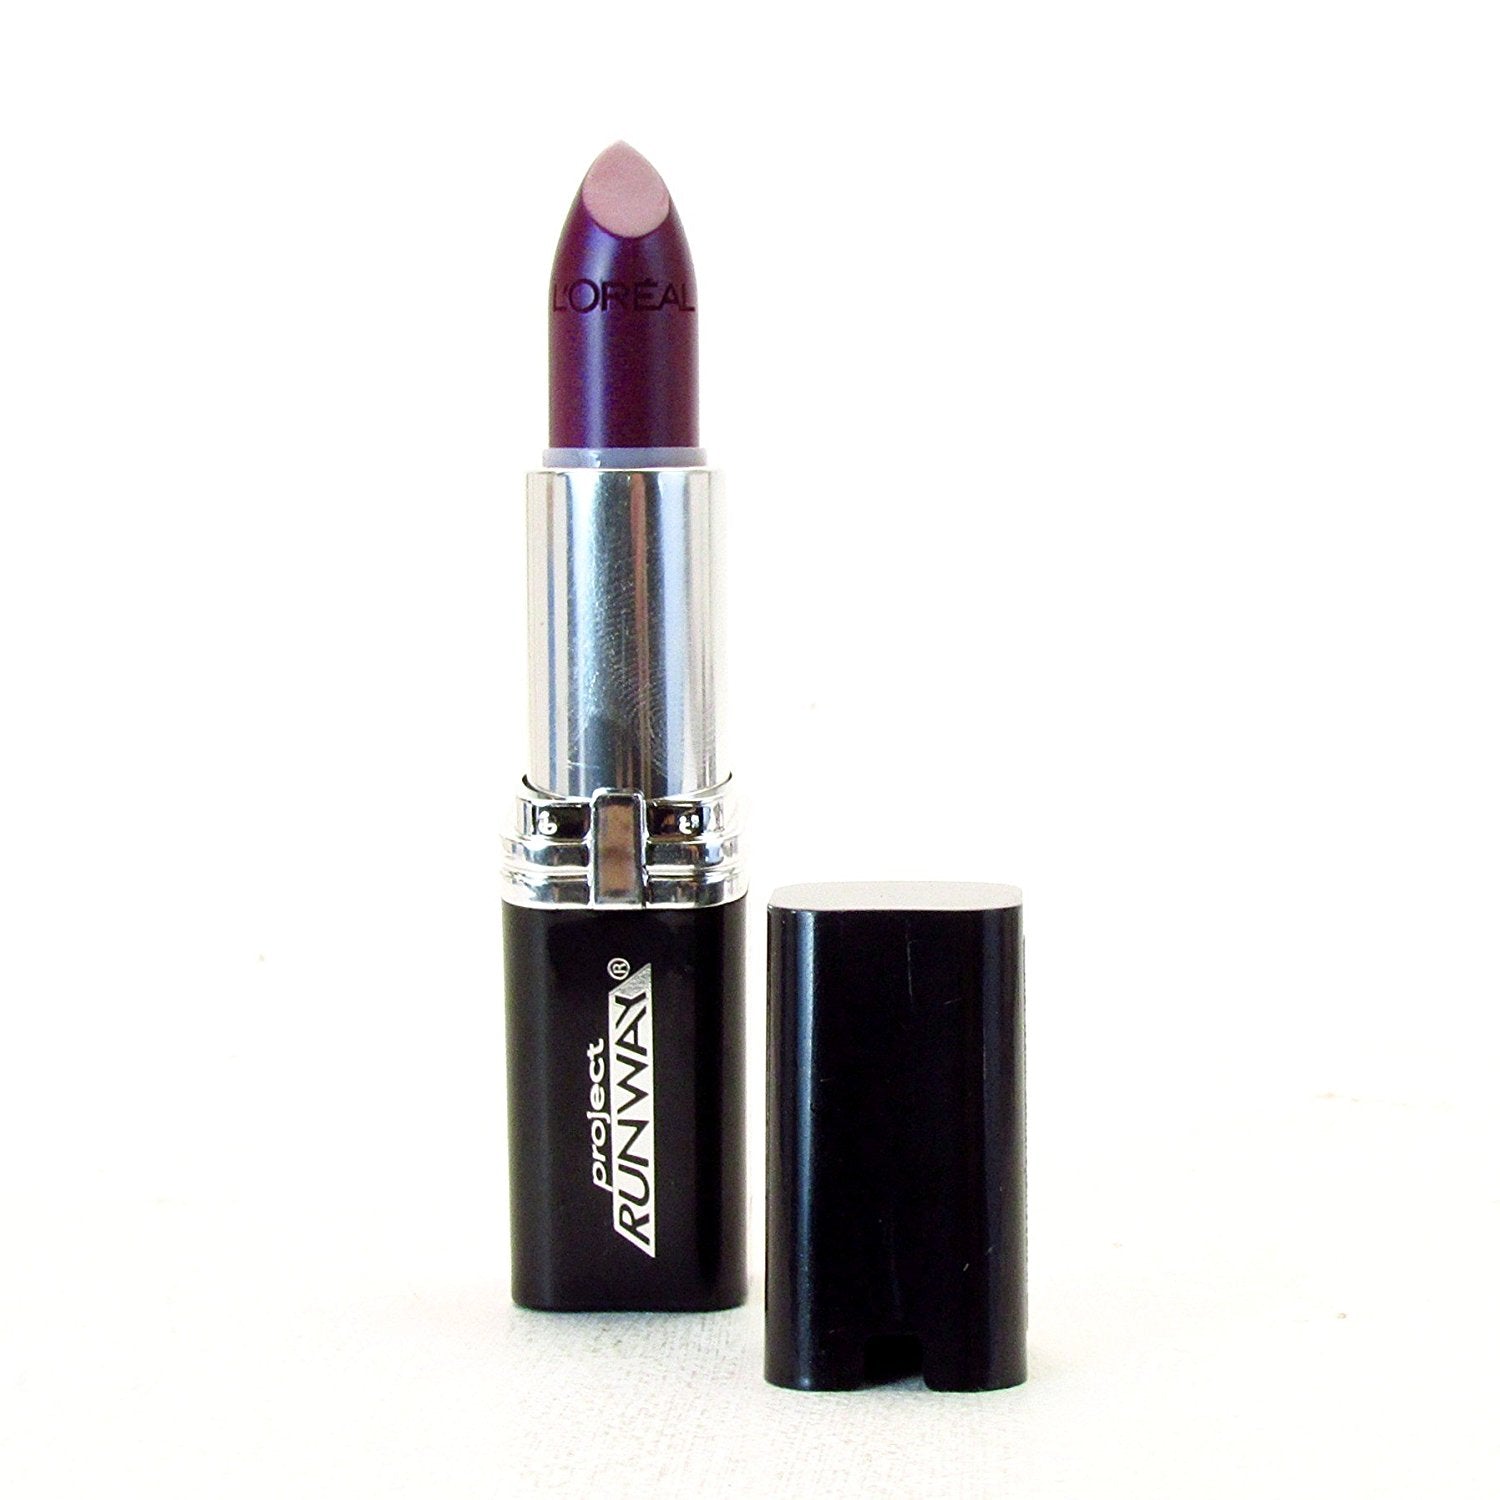 Elizabeth Arden Color Intrigue Lipstick, (Guava Pearl) - ADDROS.COM